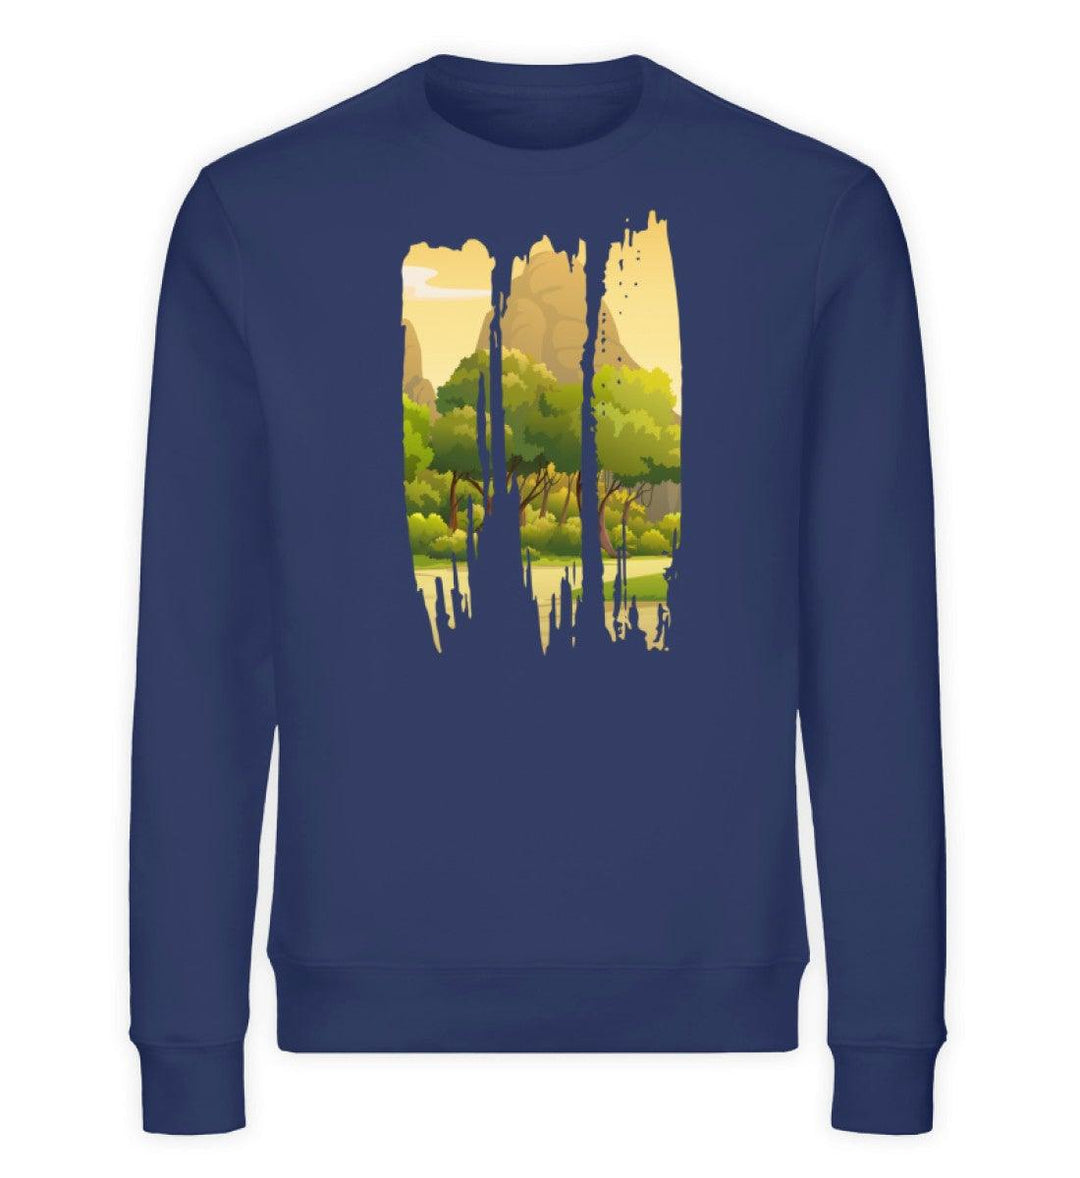 Lovely Nature Brush 2 - Unisex Bio Sweatshirt